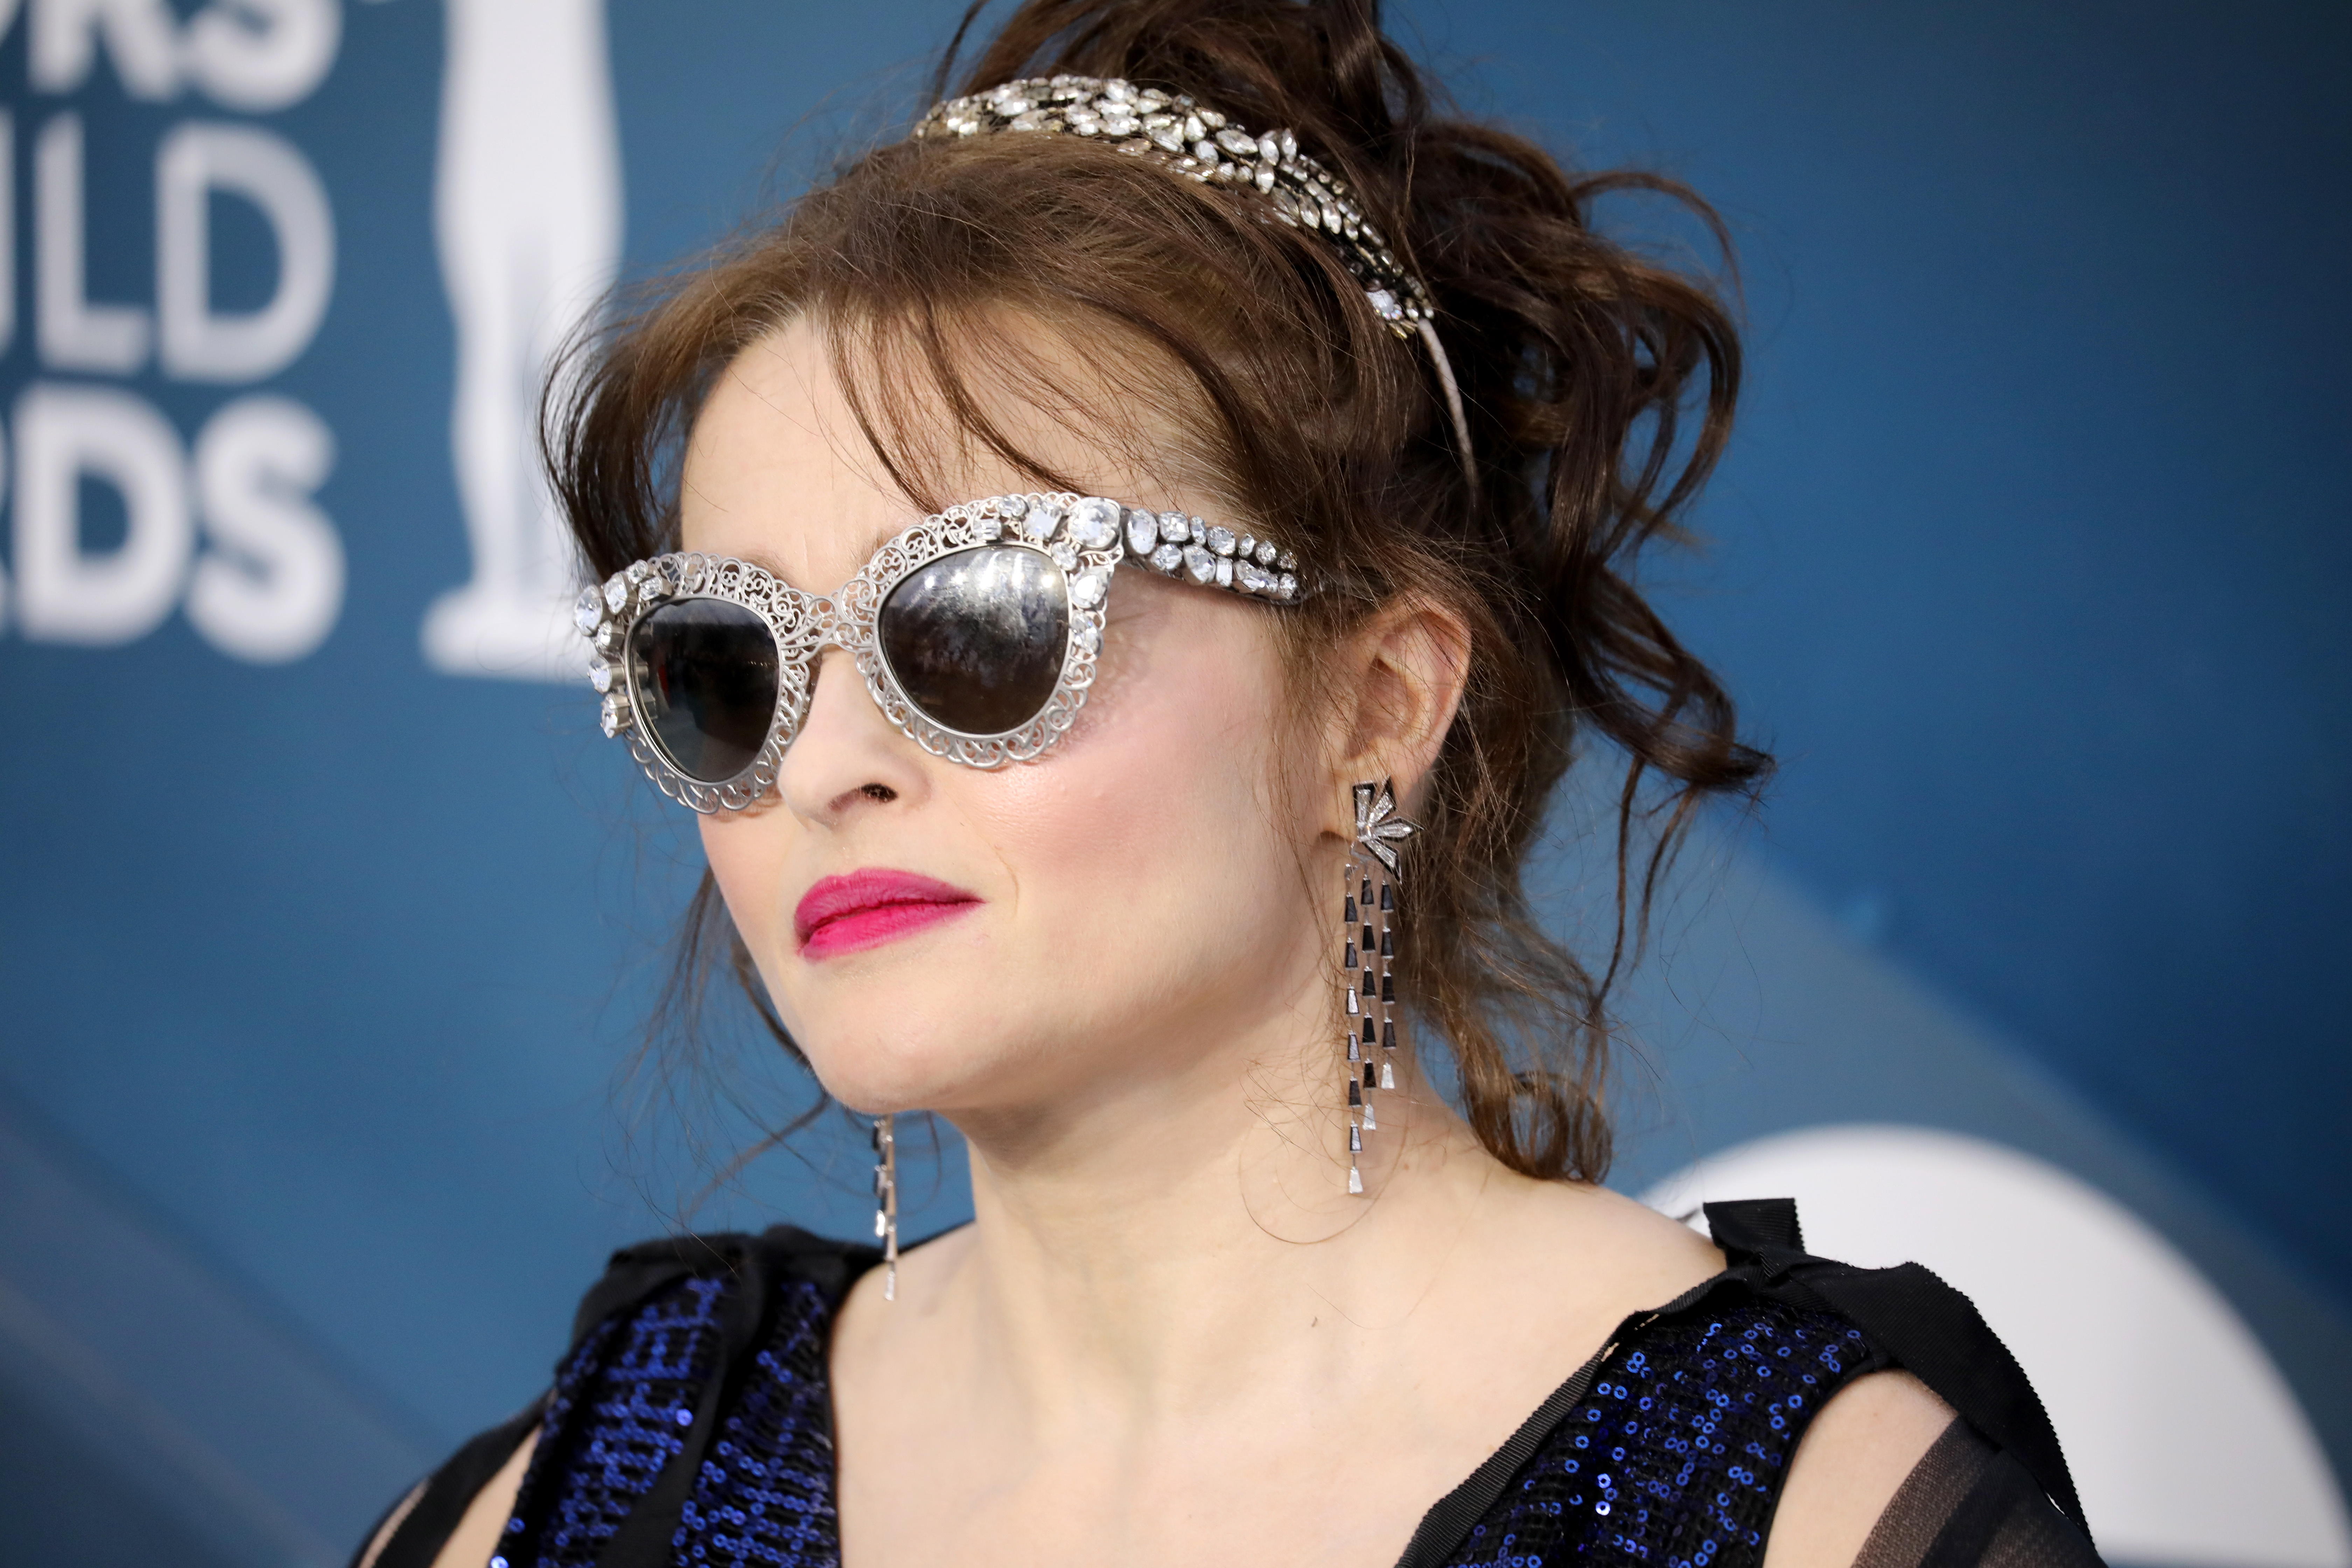 En una entrevista Helena Bonham criticó a Amber Heard y aseguró que Johnny Depp ya está reivindicado. (Foto Prensa Libre: EFE/EPA/DAVID SWANSON)